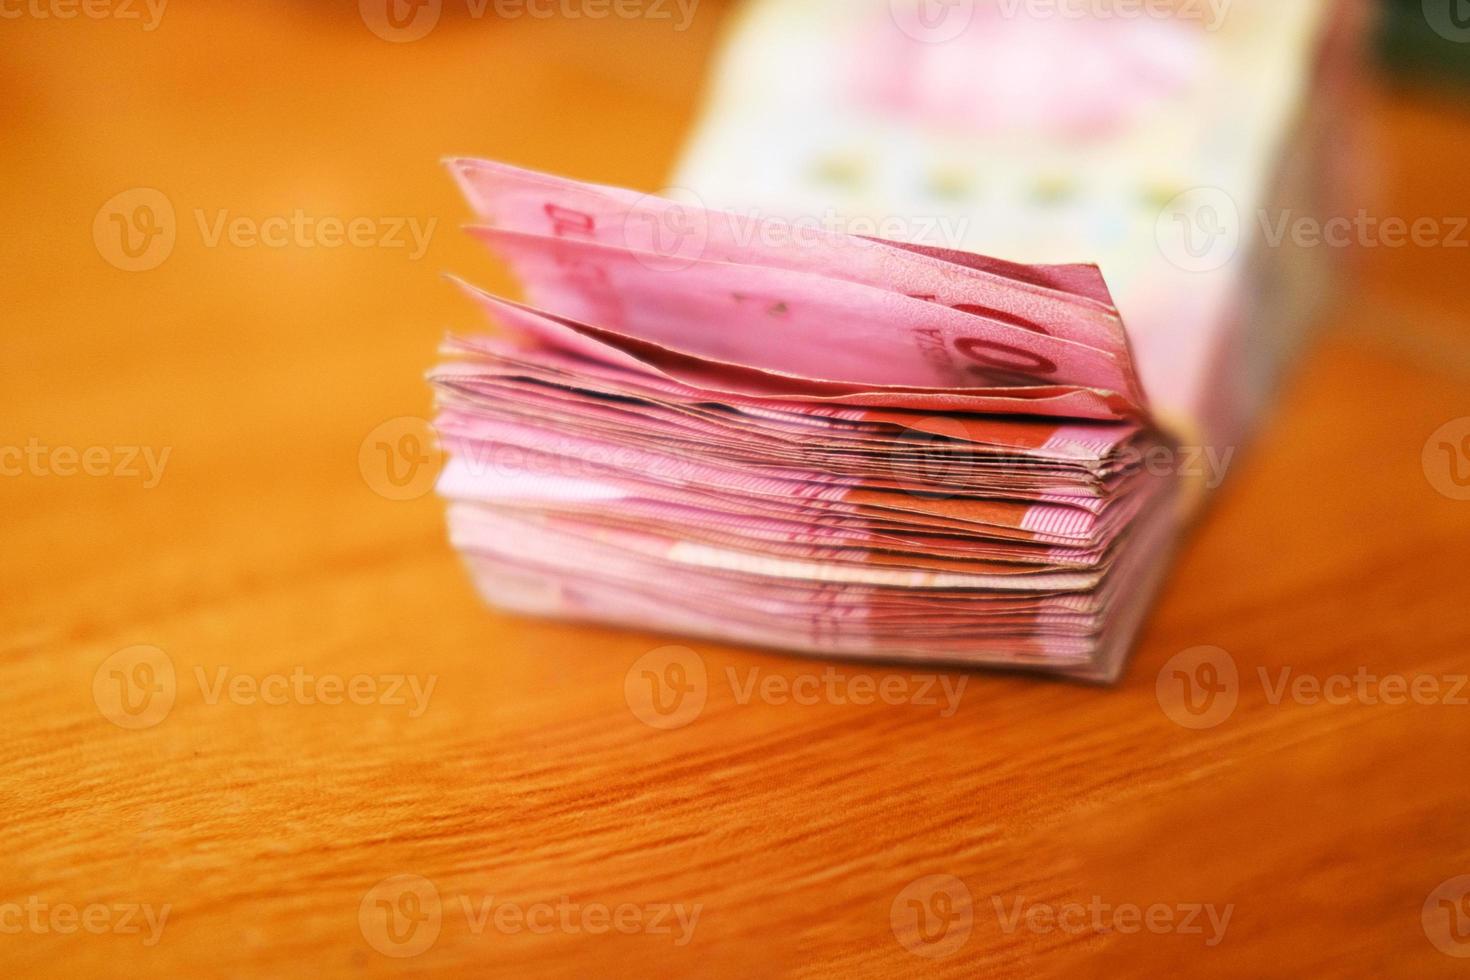 centenas de milhares de notas de rupias no chão. notas indonésias foto